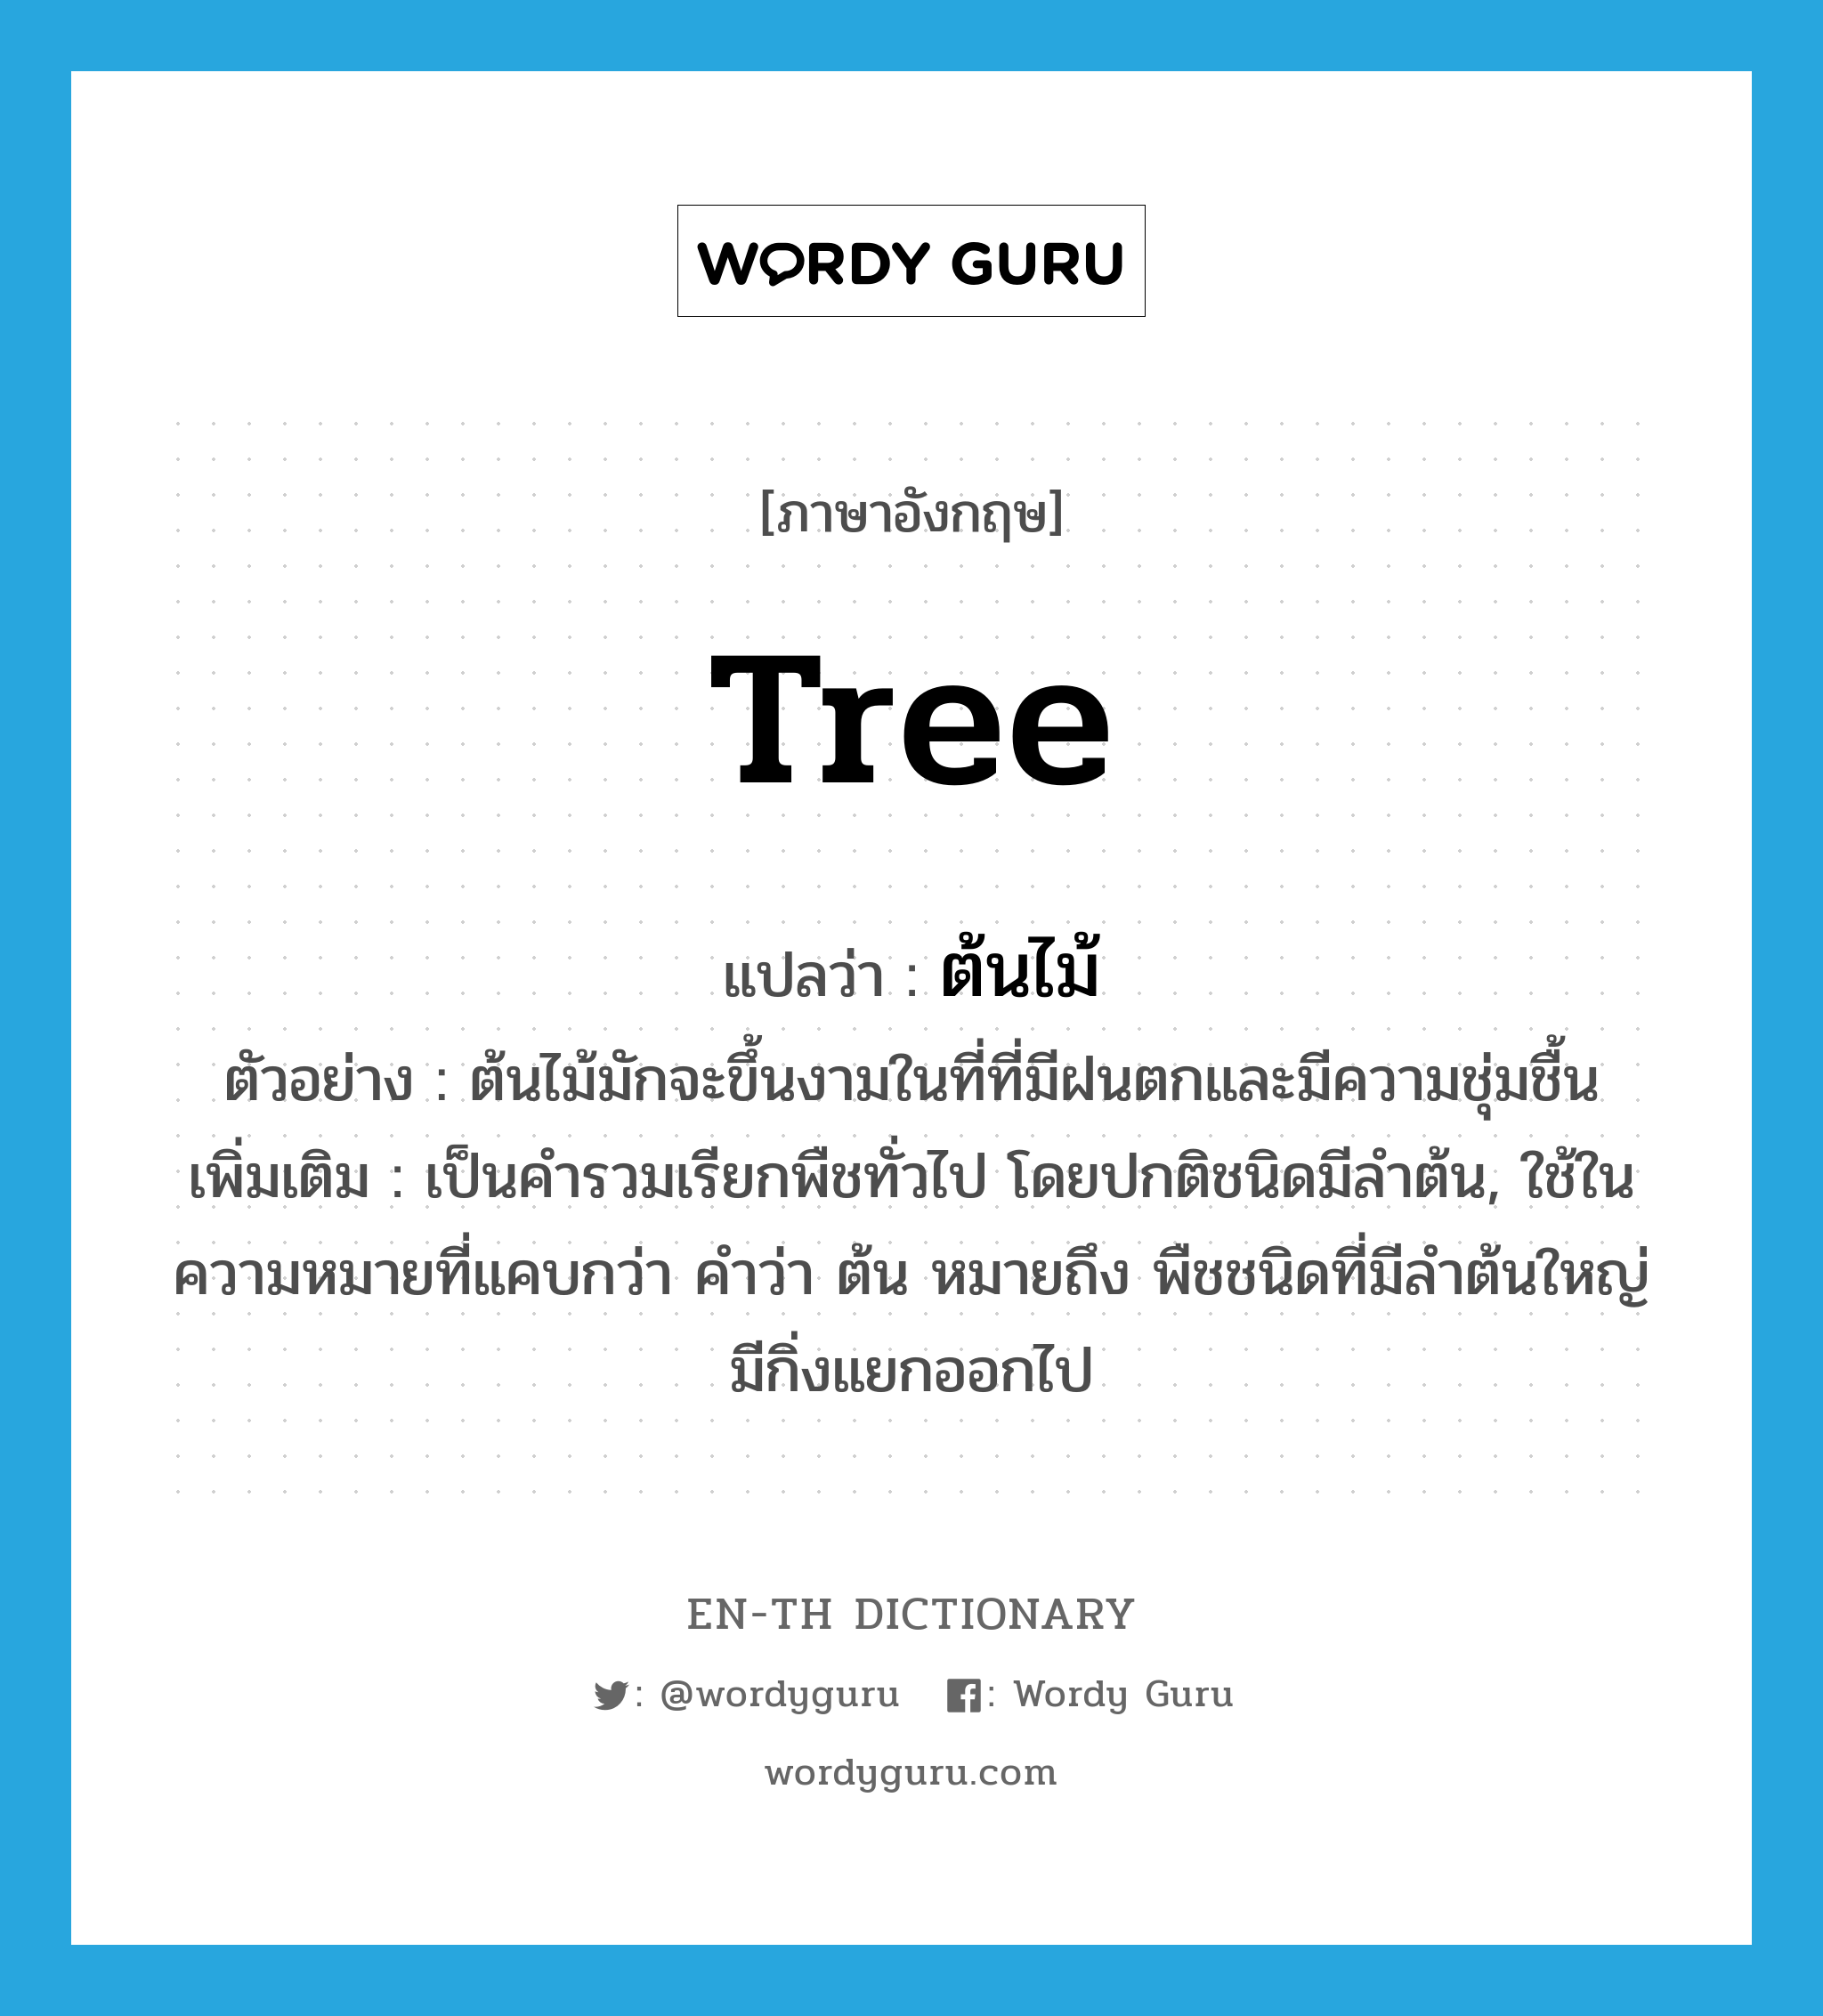 tree แปลว่า?, คำศัพท์ภาษาอังกฤษ tree แปลว่า ต้นไม้ ประเภท N ตัวอย่าง ต้นไม้มักจะขึ้นงามในที่ที่มีฝนตกและมีความชุ่มชื้น เพิ่มเติม เป็นคำรวมเรียกพืชทั่วไป โดยปกติชนิดมีลำต้น, ใช้ในความหมายที่แคบกว่า คำว่า ต้น หมายถึง พืชชนิดที่มีลำต้นใหญ่มีกิ่งแยกออกไป หมวด N